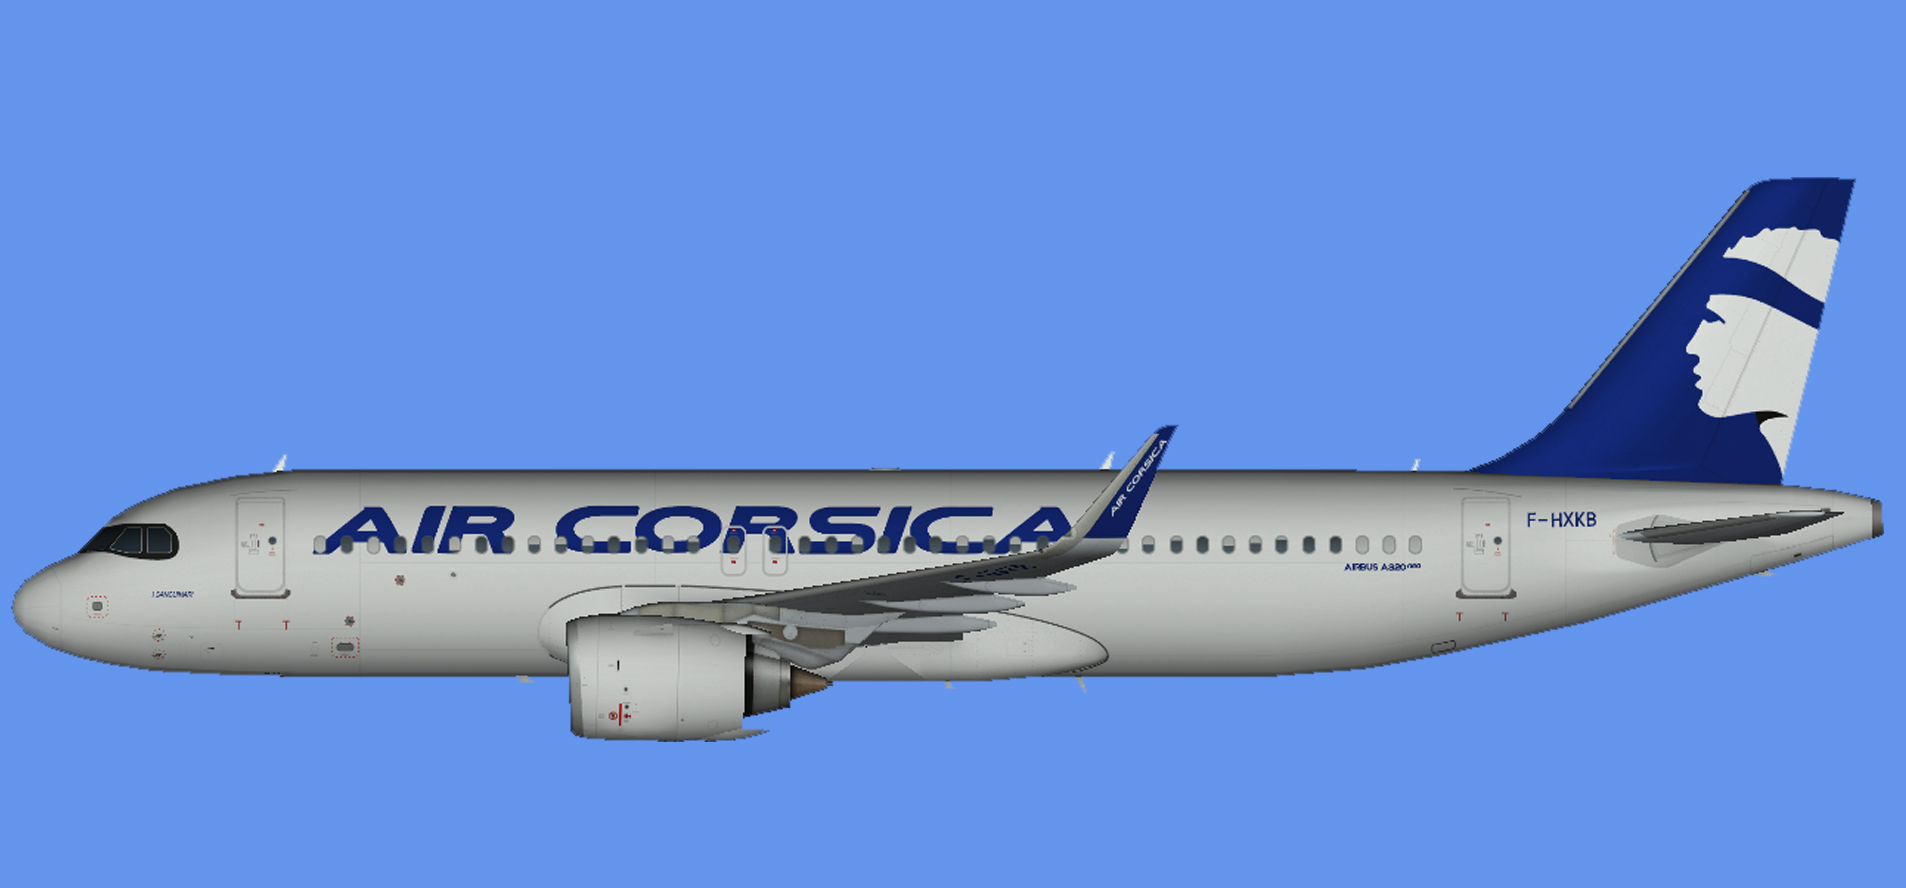 Air Corsica A320 neo